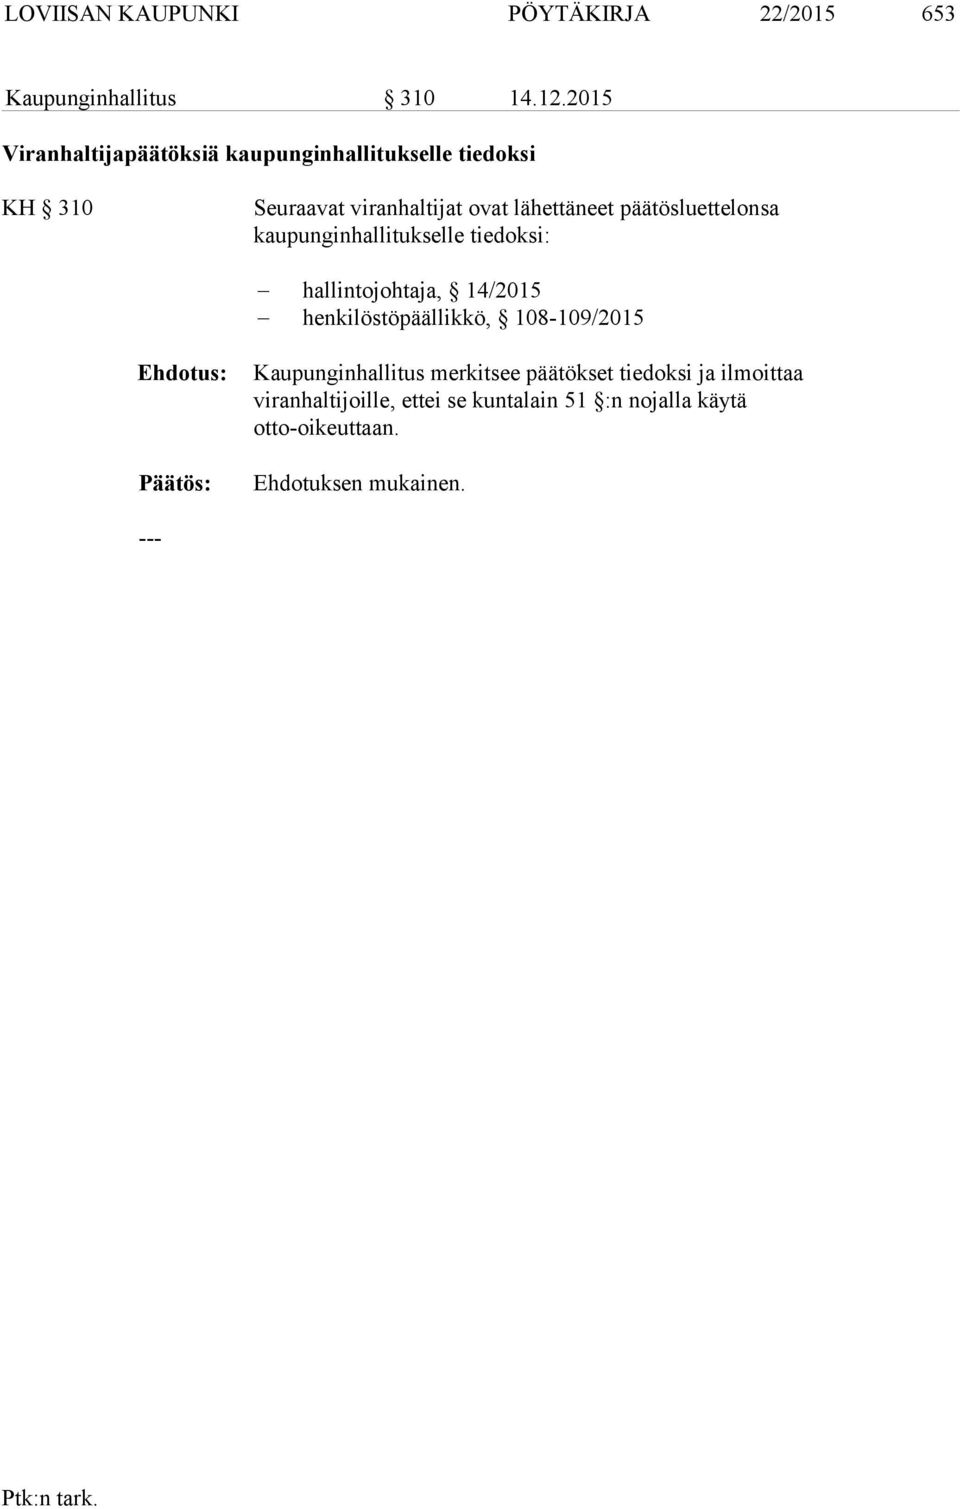 päätösluettelonsa kaupunginhallitukselle tiedoksi: hallintojohtaja, 14/2015 henkilöstöpäällikkö, 108-109/2015